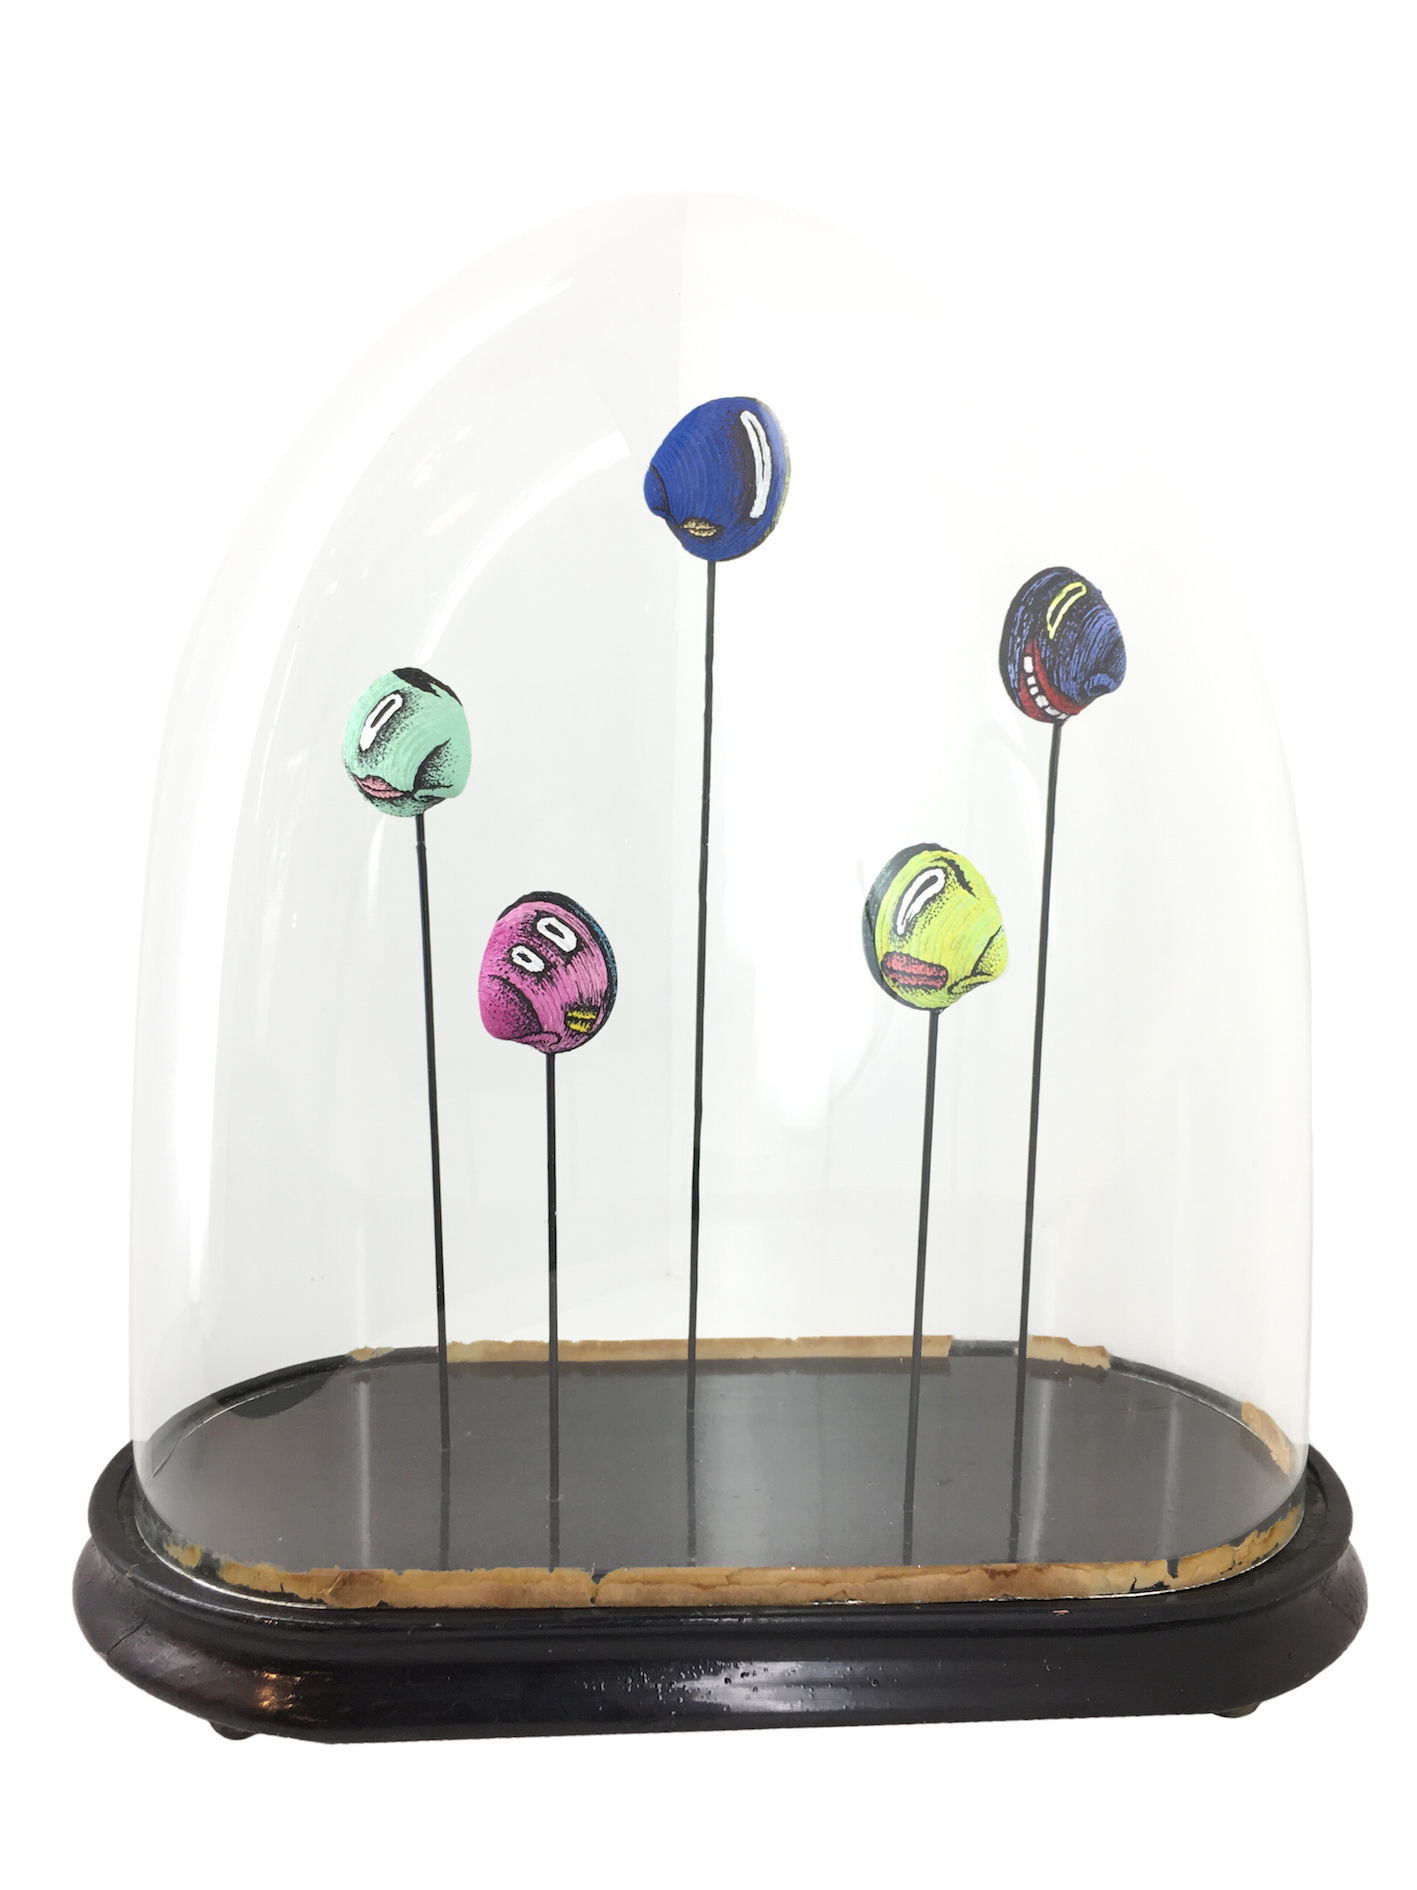 Composition avec 5 coquillages peints sur tiges acier sous globe en verre ancien  base noire sur fond blanc